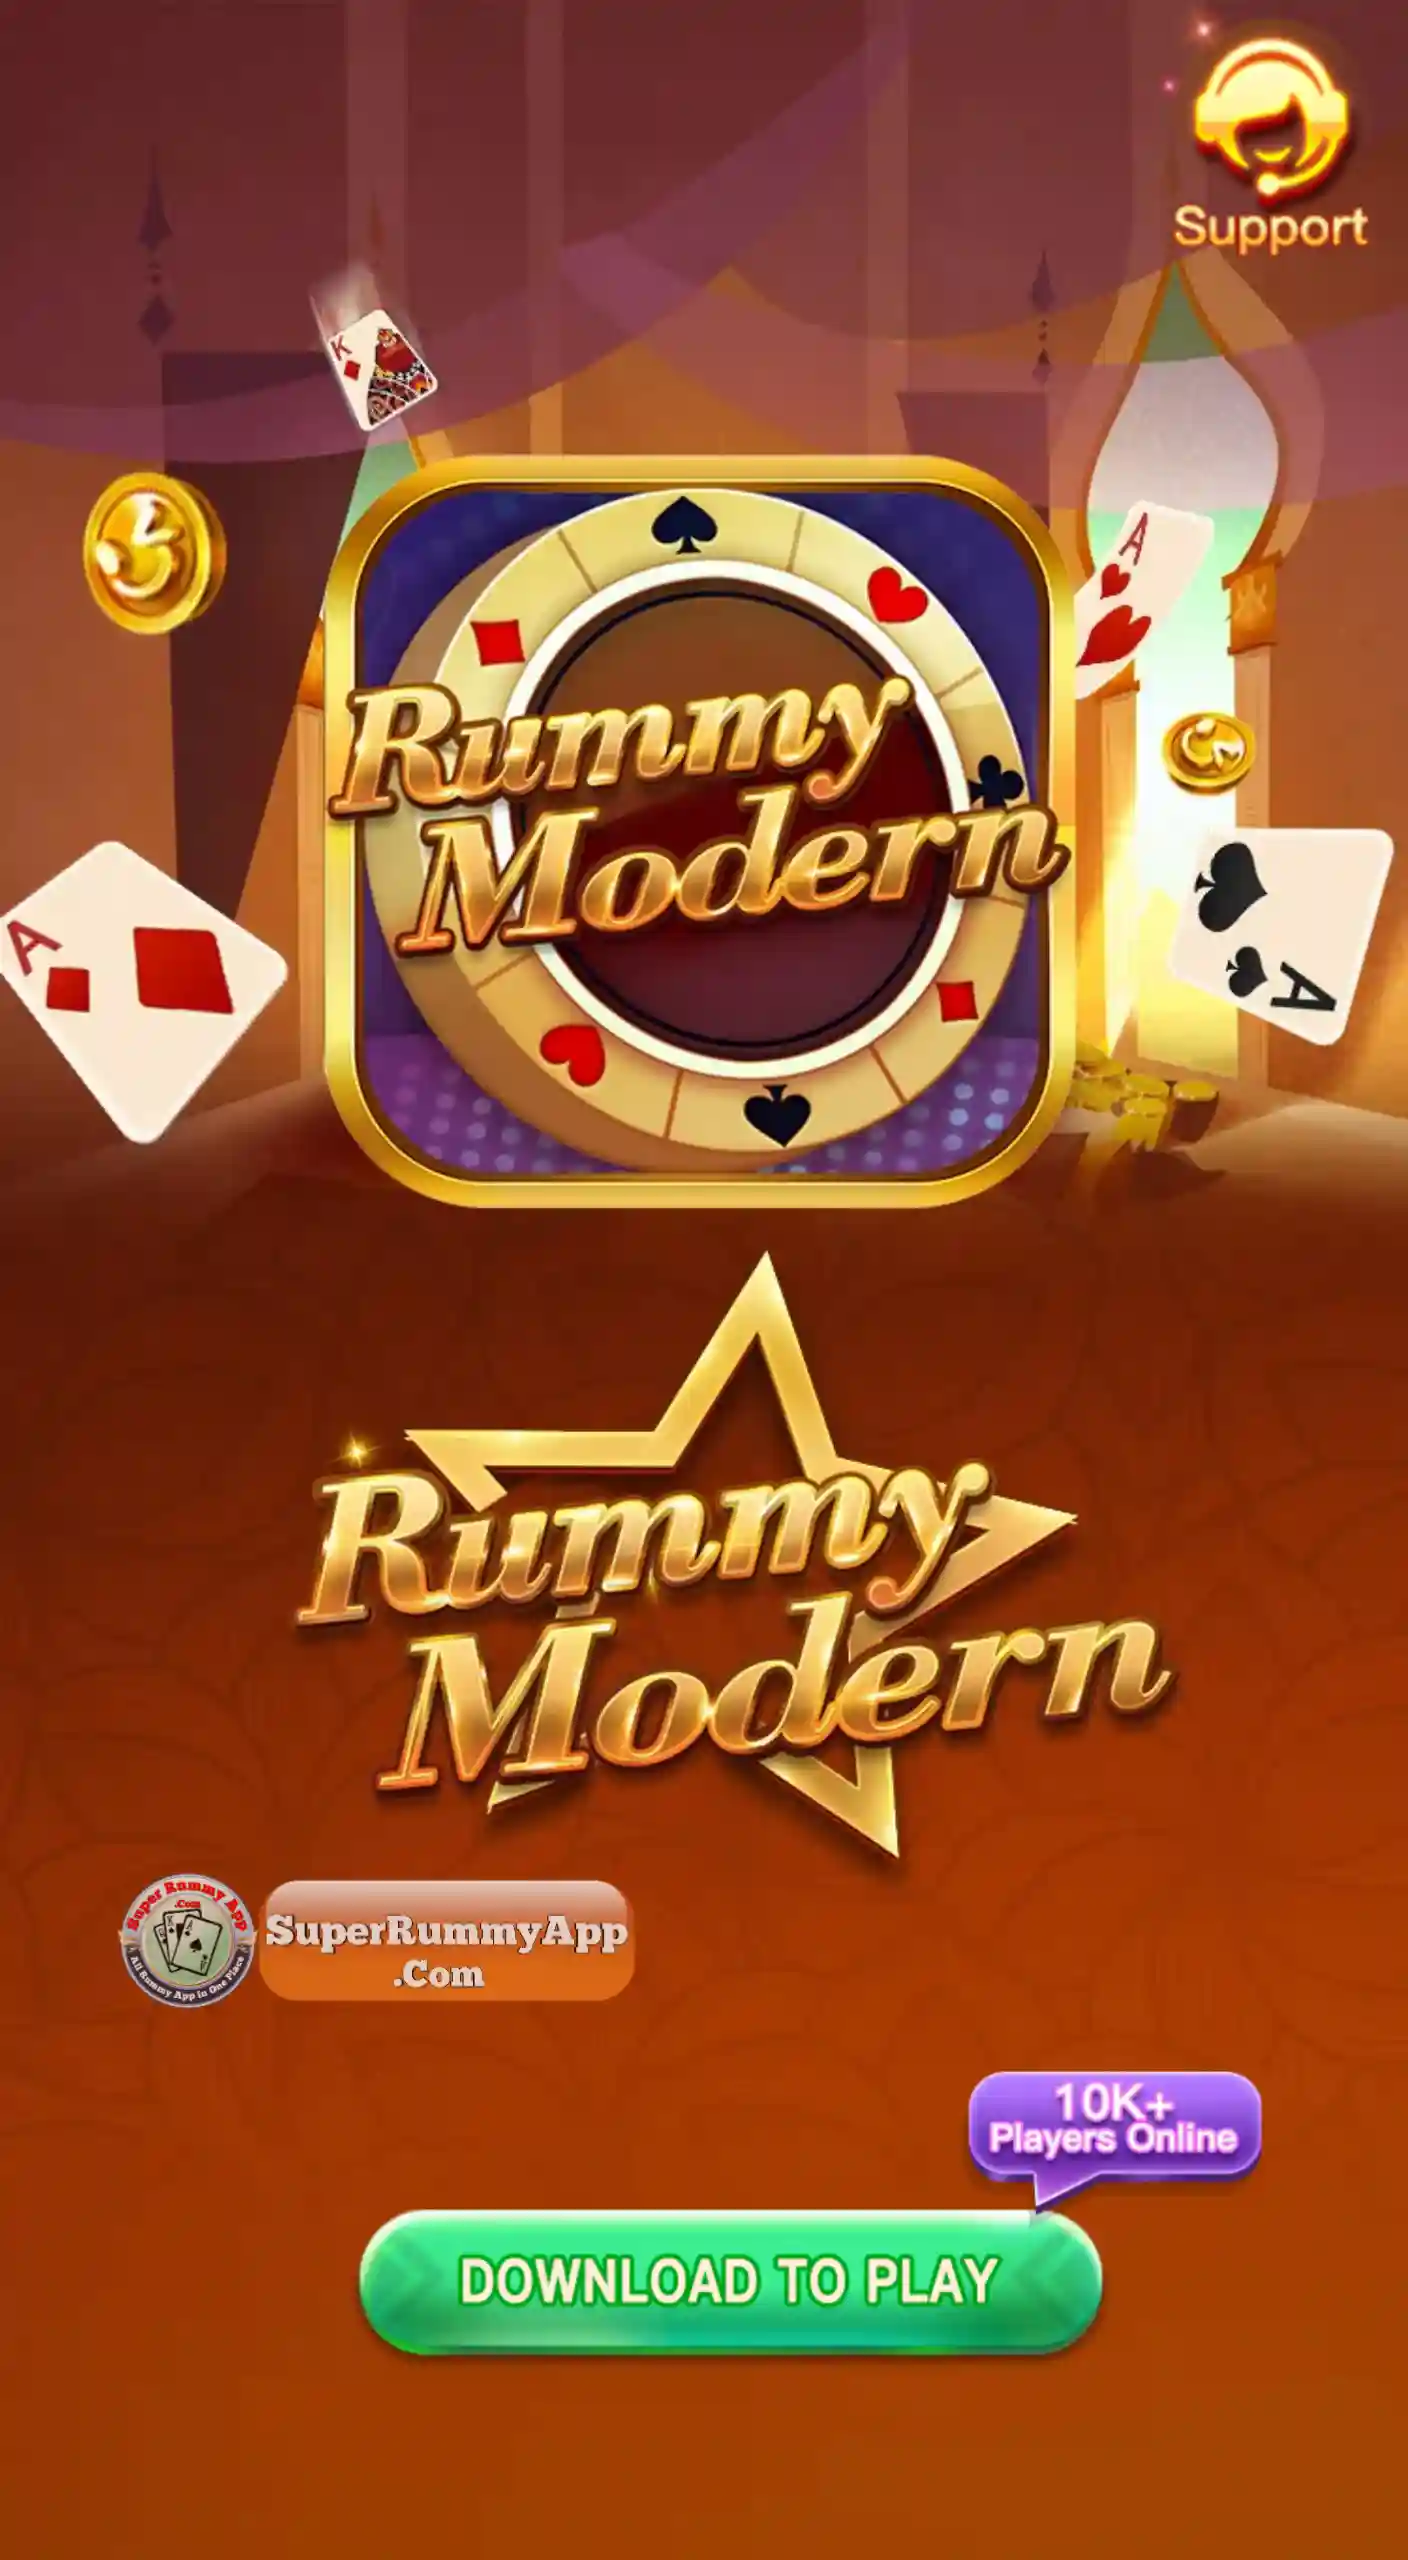 Rummy Modern Apk Download - Super Rummy App